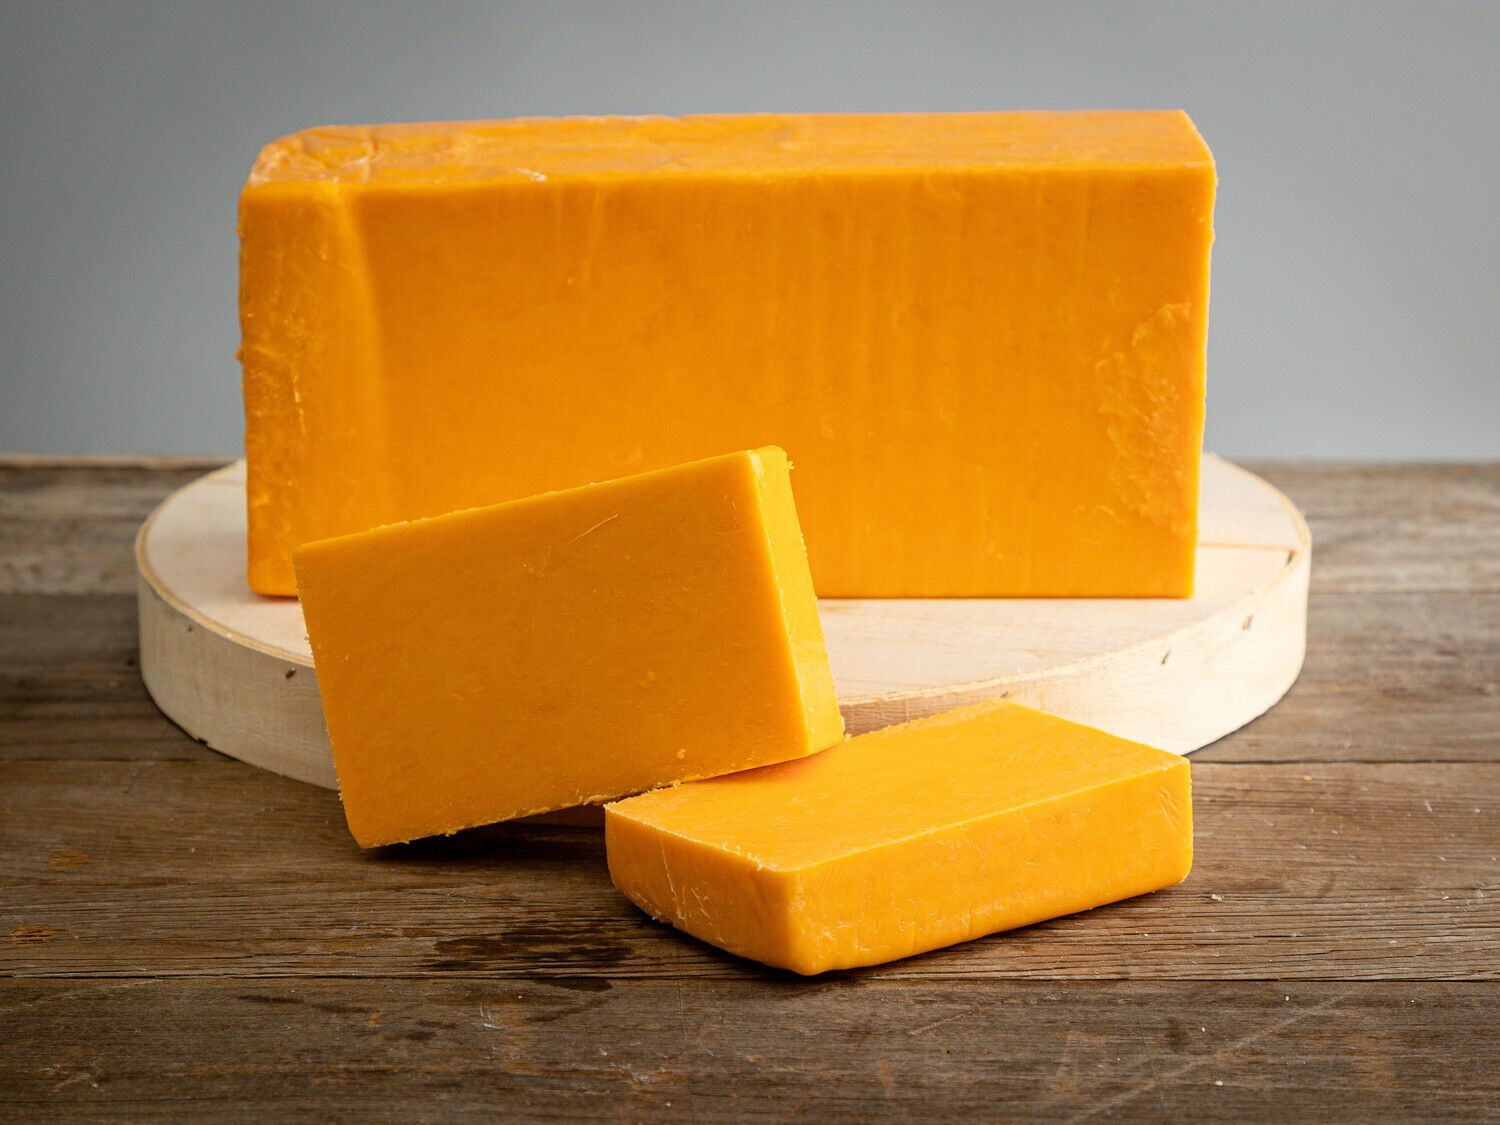 Ohio Cheddar Cheese